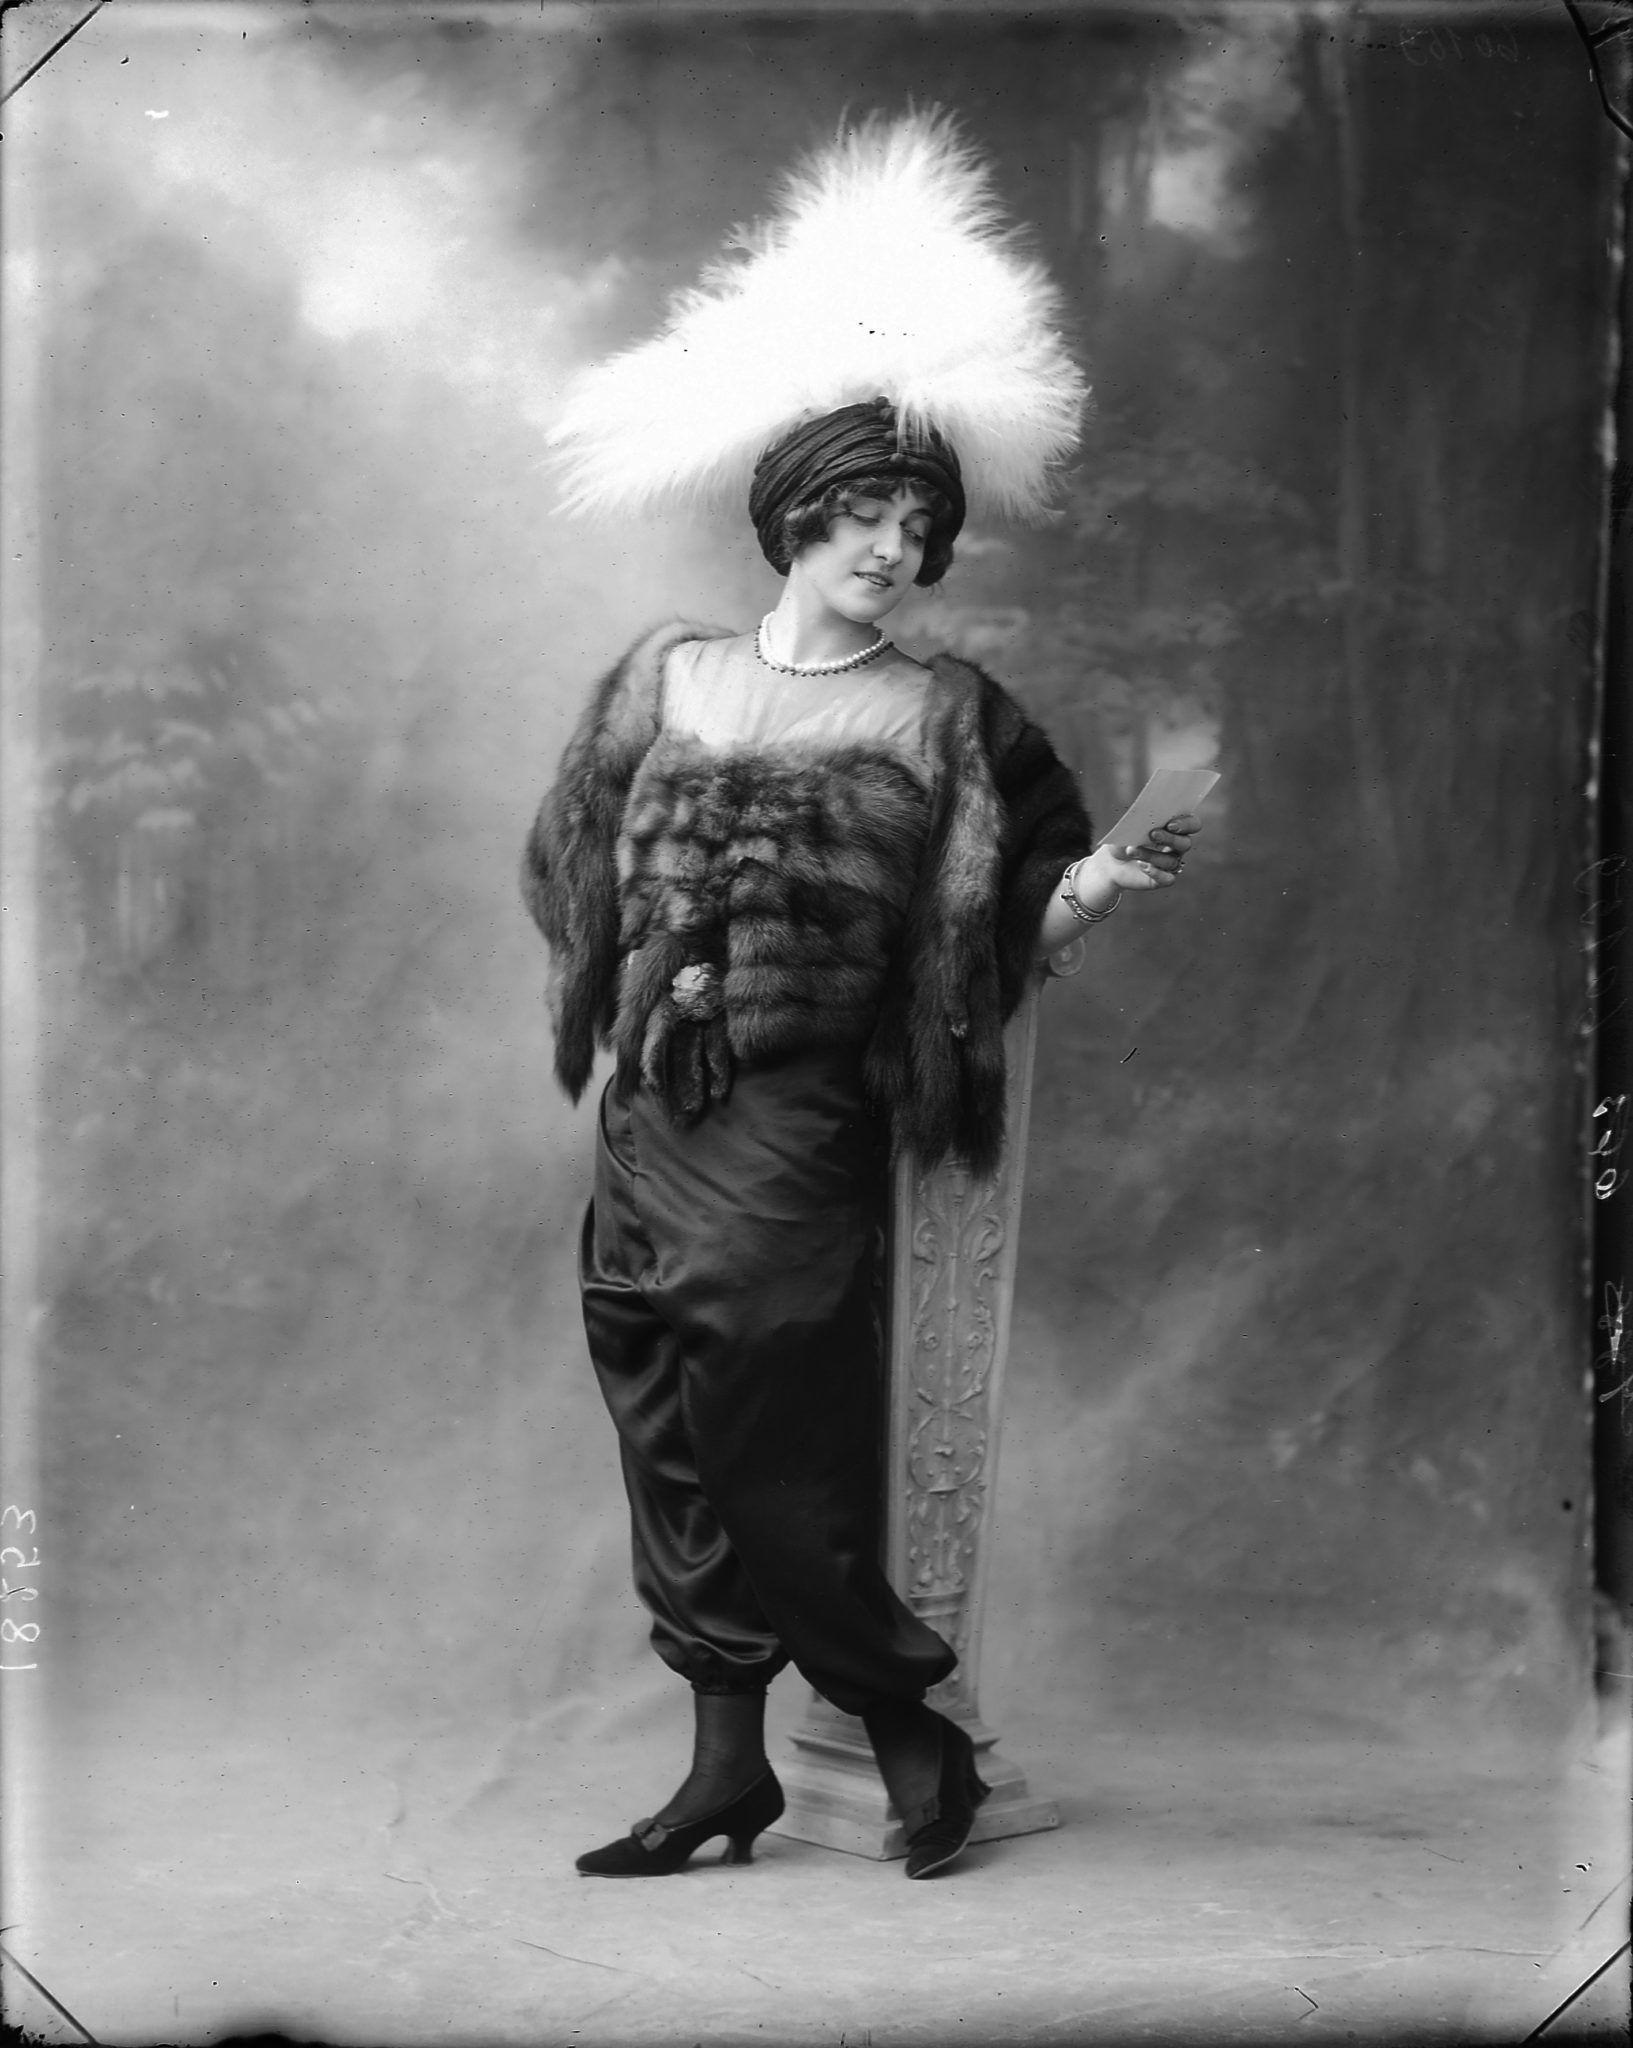  Lyda Borelli con la jupe-culotte, 1911 circa. Fotografia di Mario Numes Vais. ICCD-GFN, Archivio Nunes Vais, Roma